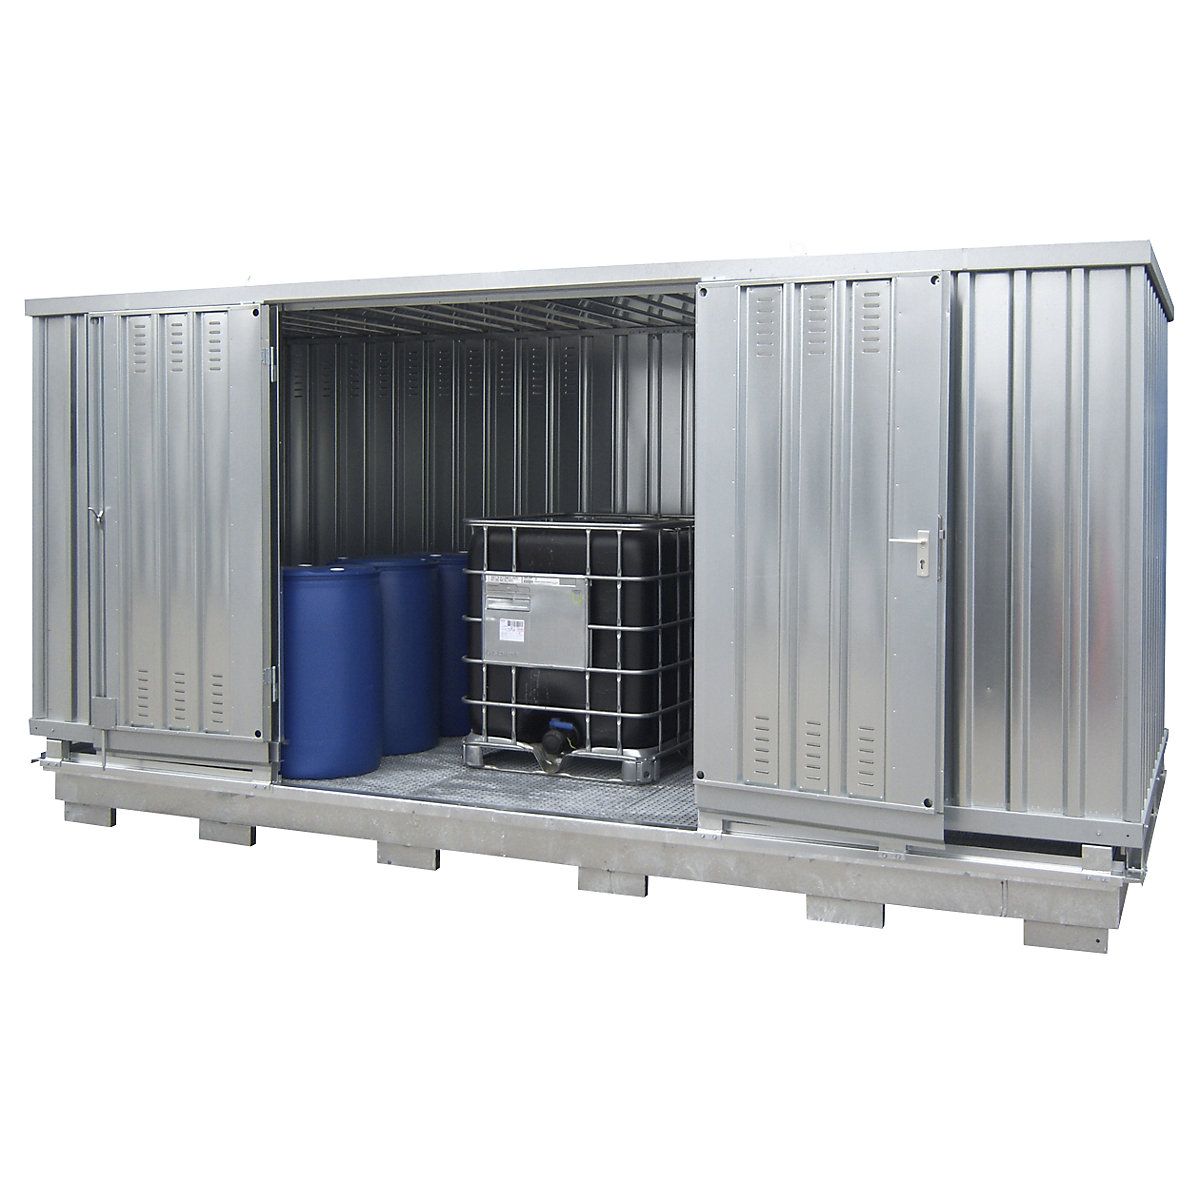 Kontejner za pasivno skladištenje opasnih zapaljivih tvari – LaCont